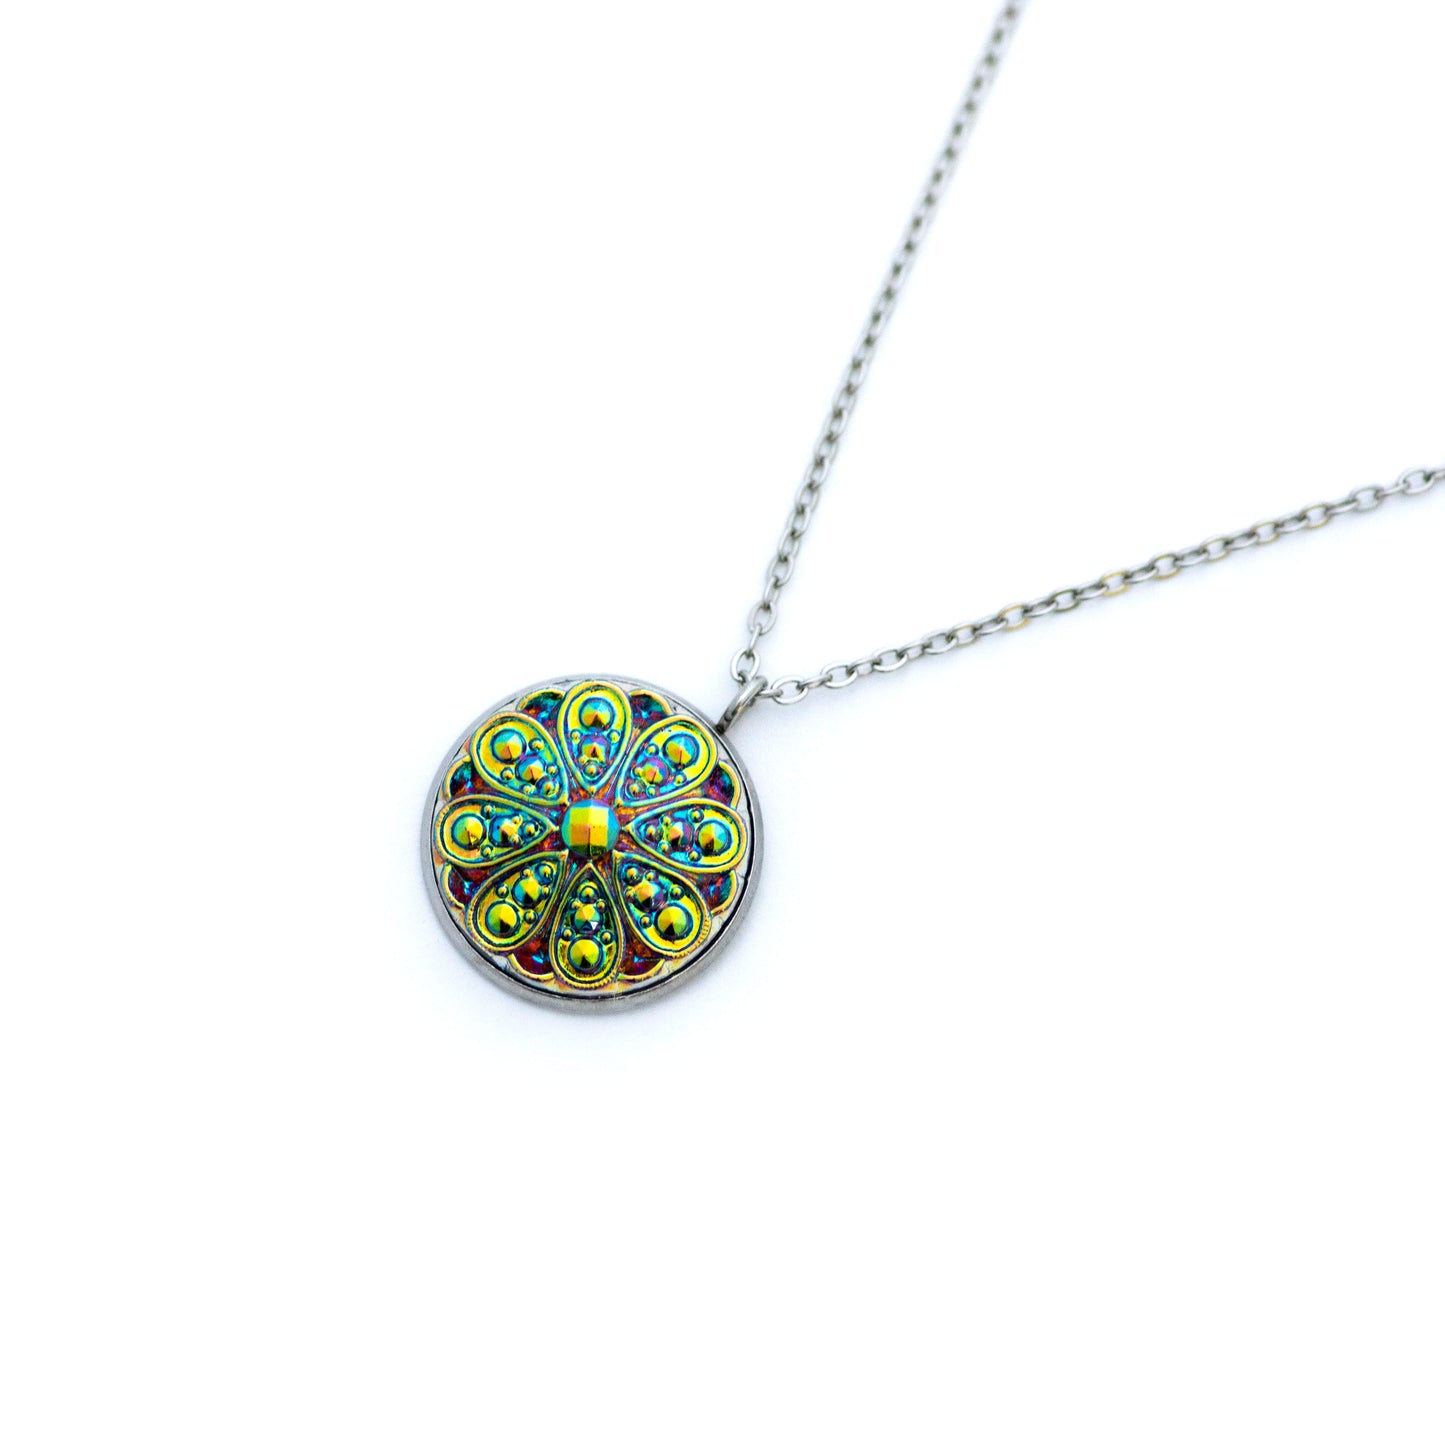 Czech Glass Button Necklace - Blue Green Yellow Iridescent 8 Petals